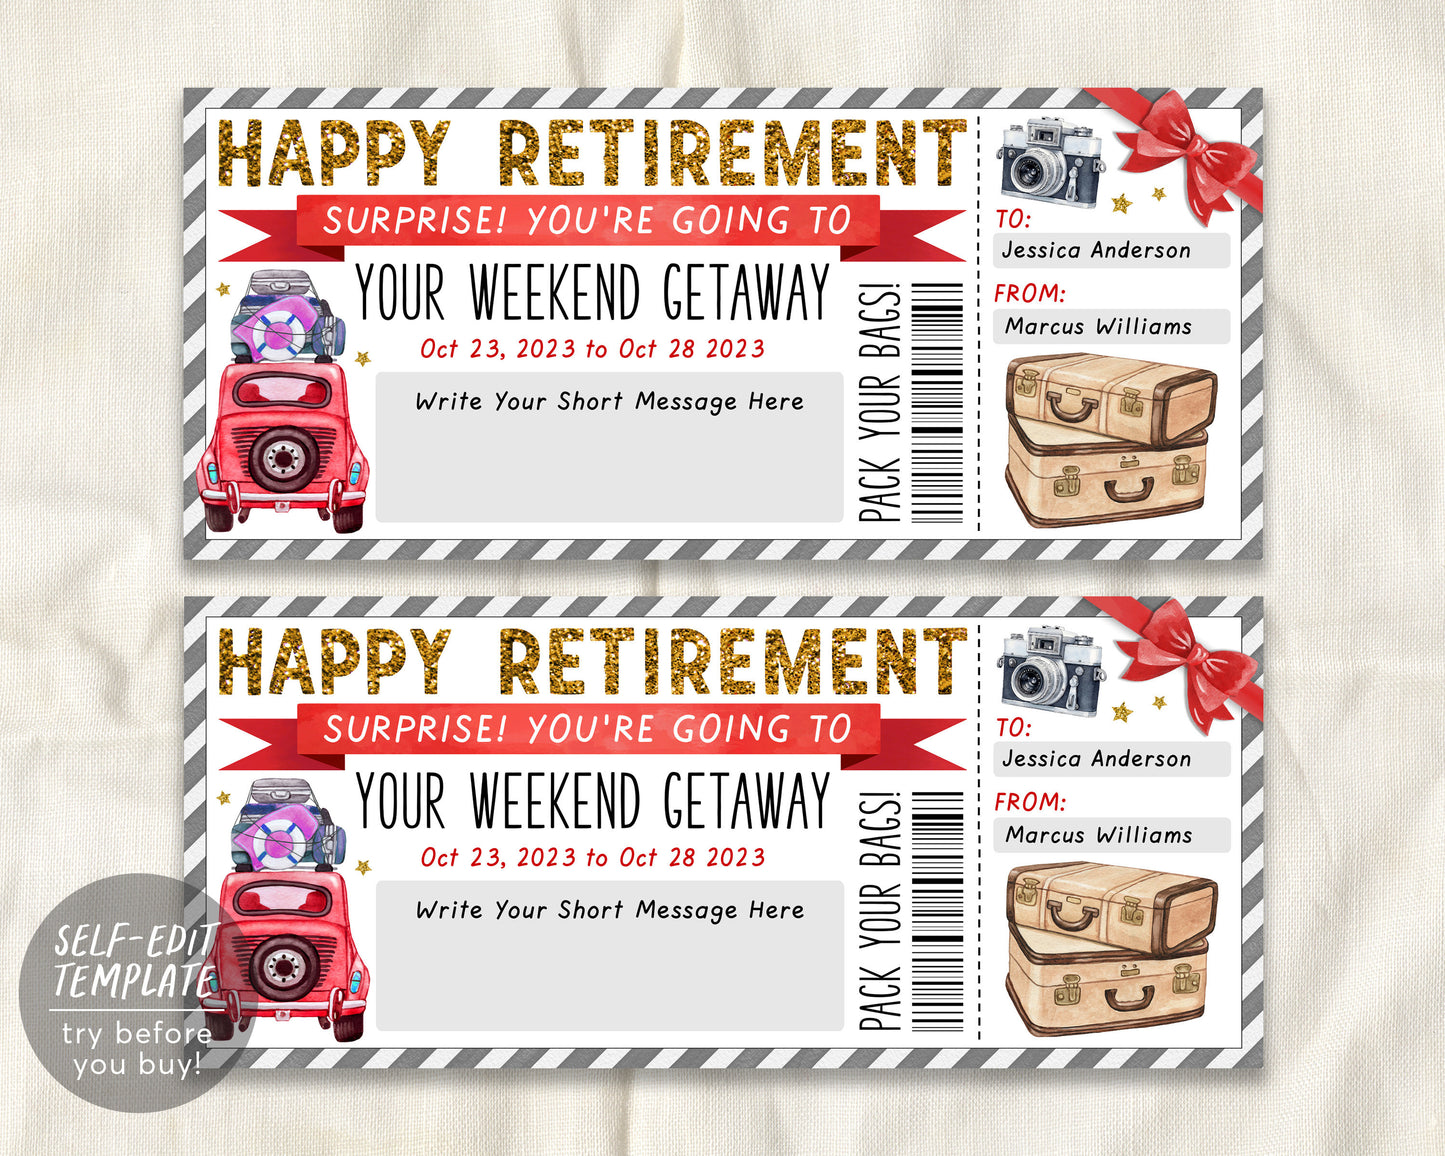 Retirement Weekend Getaway Voucher Editable Template